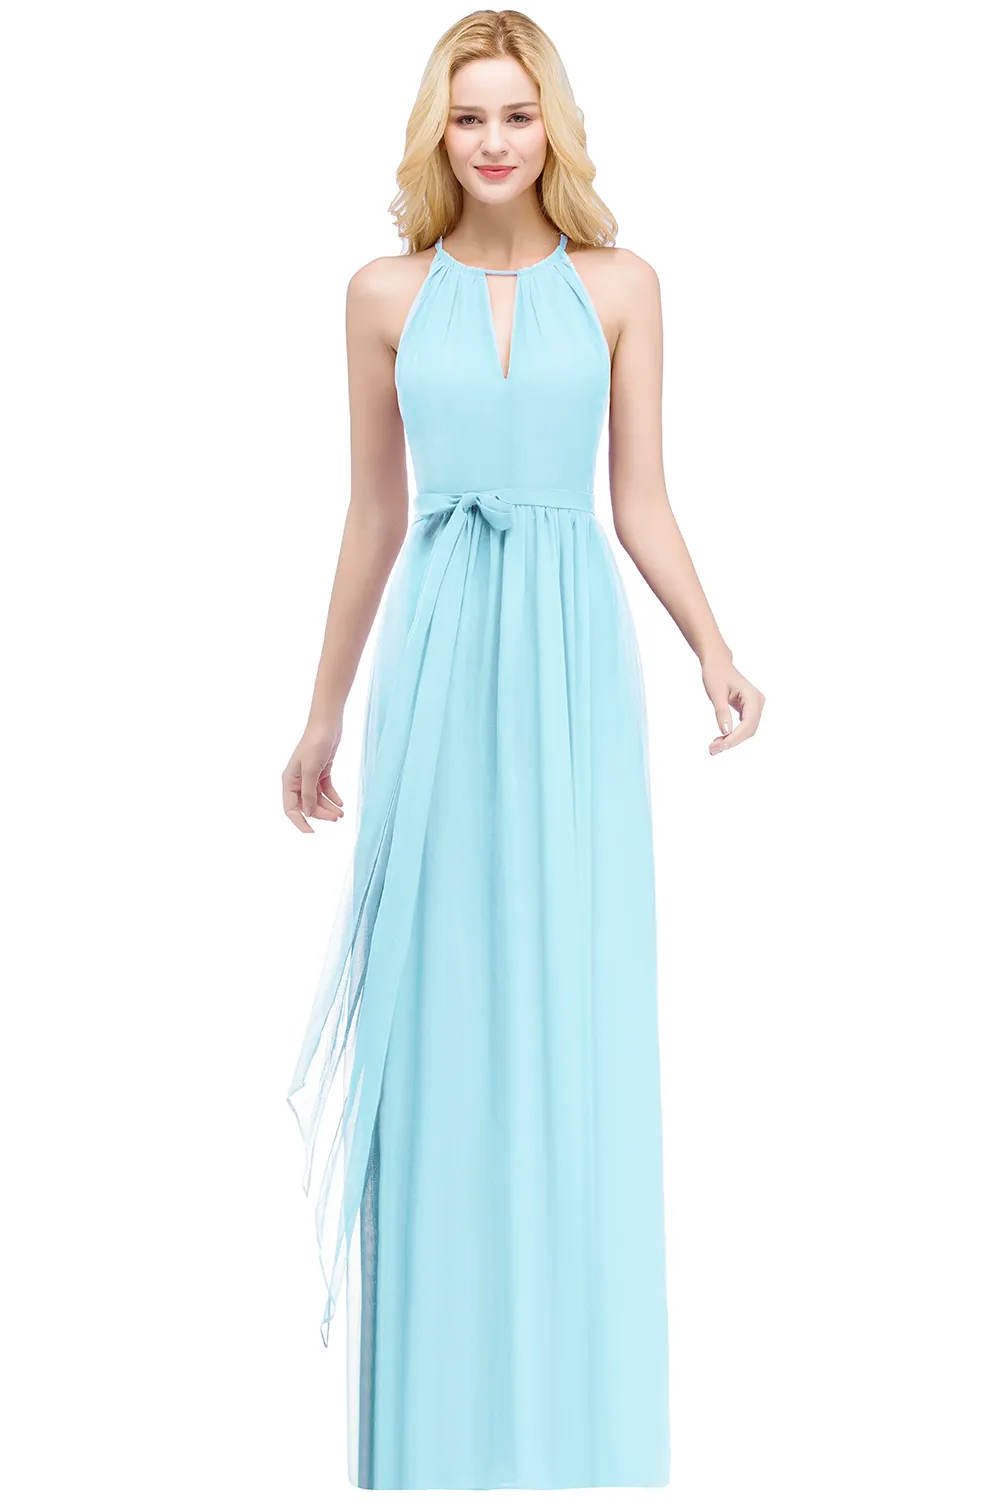 Estoque elegante vestidos de noite halter borgonha azul marinho azul longo uma linha chiffon eventin vestido formal vestido de festa cps868